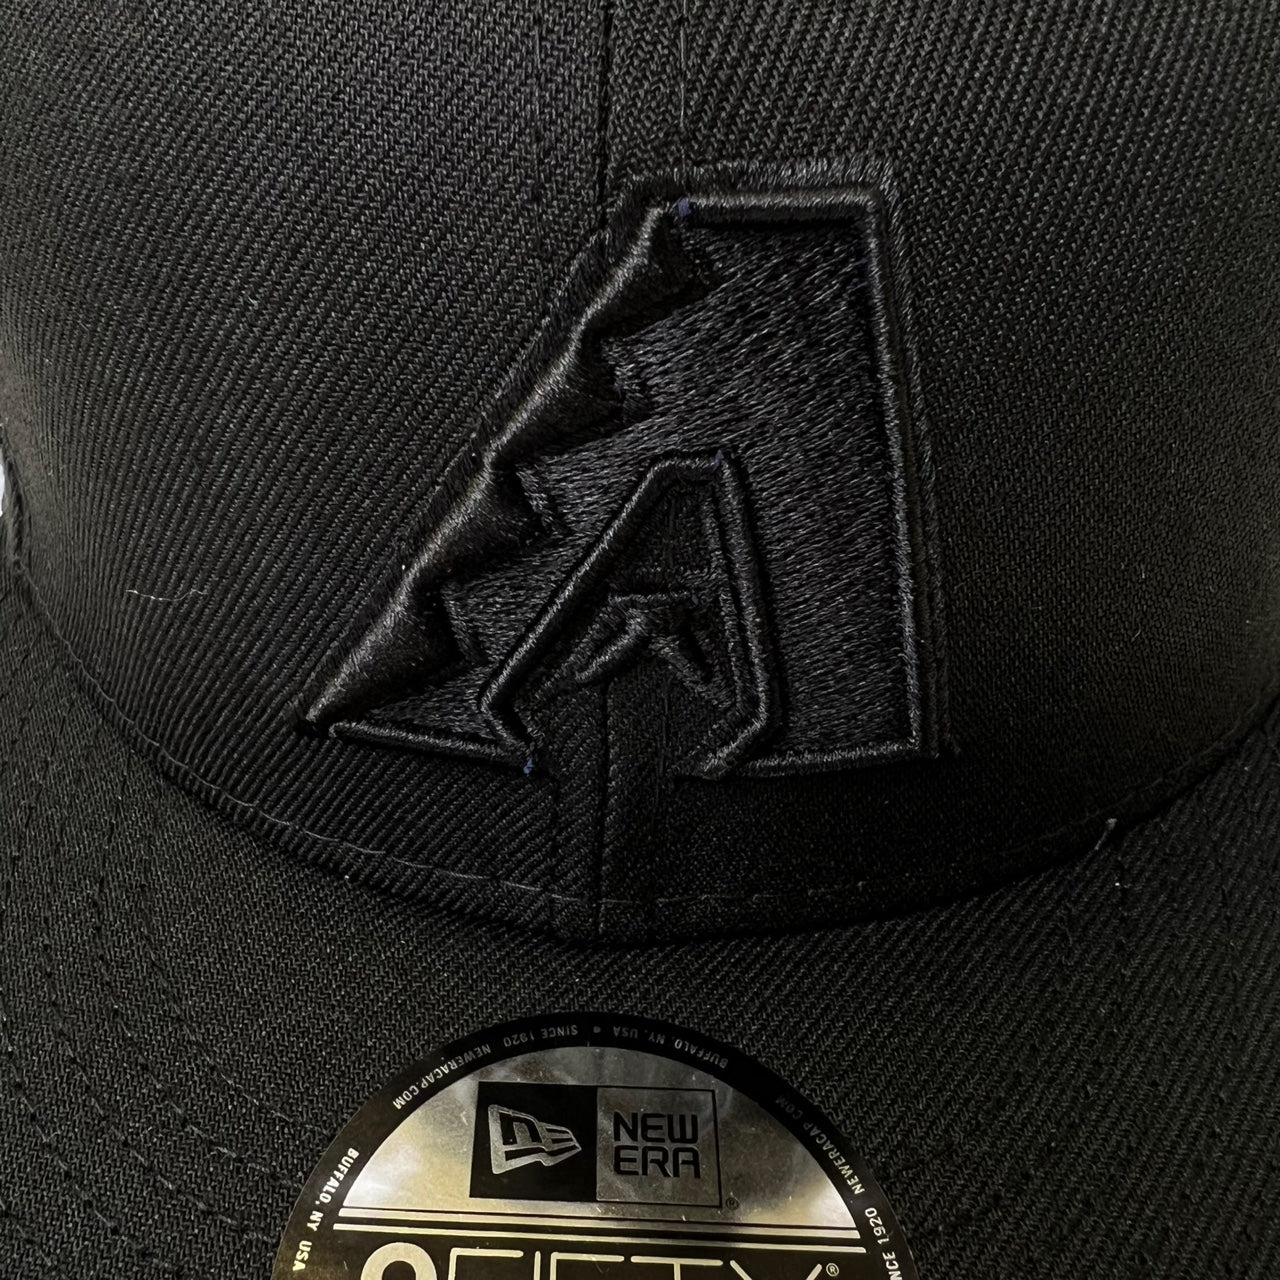 New Era Arizona Diamondbacks 9FIFTY Snapback Hat